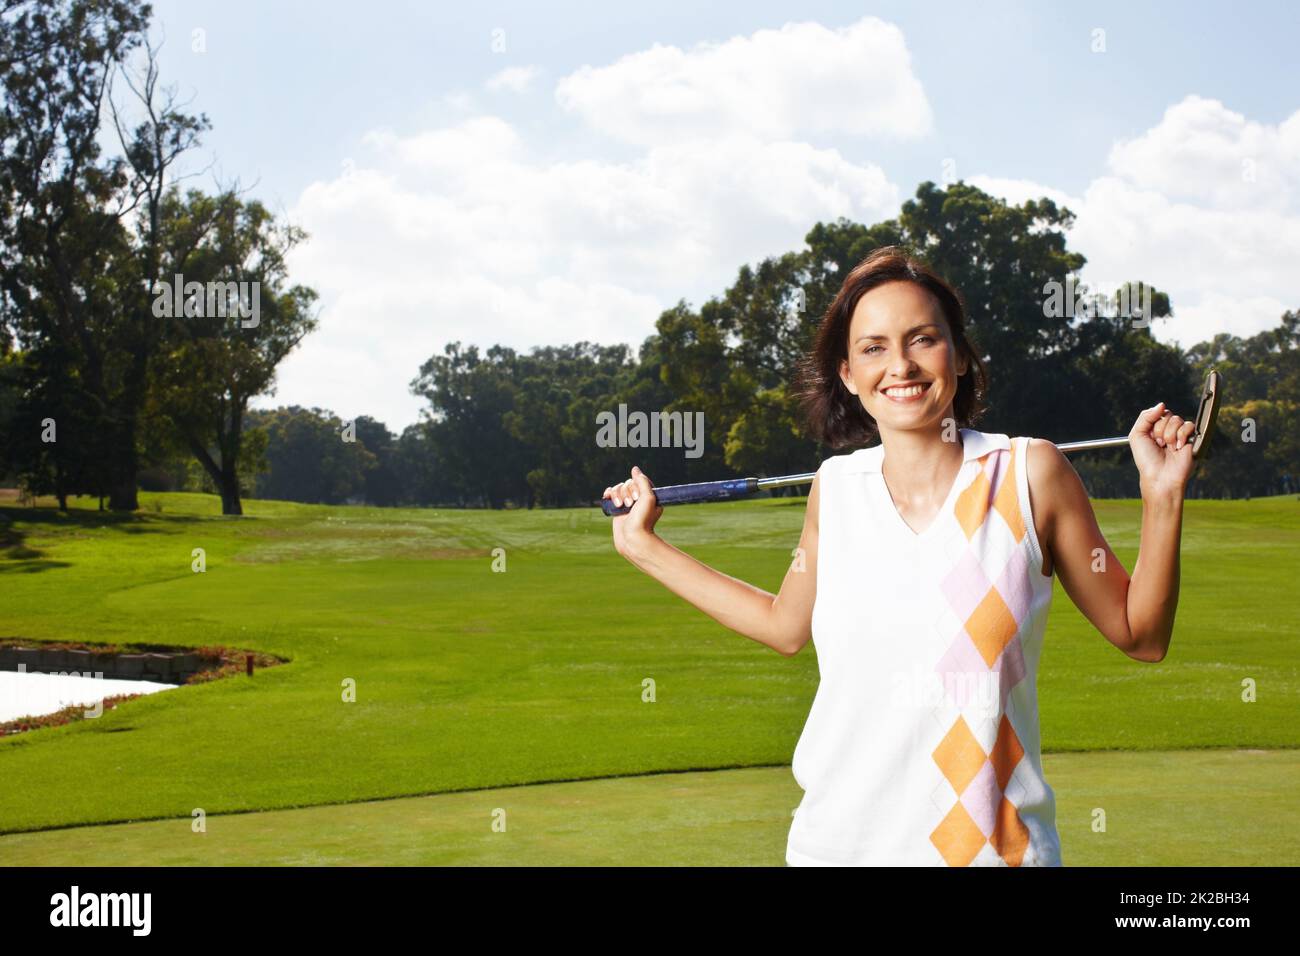 Golfs ihren Lieblingssport. Junge Frau, die auf dem Golfplatz steht und ihren Schläger über ihre Schultern hält. Stockfoto